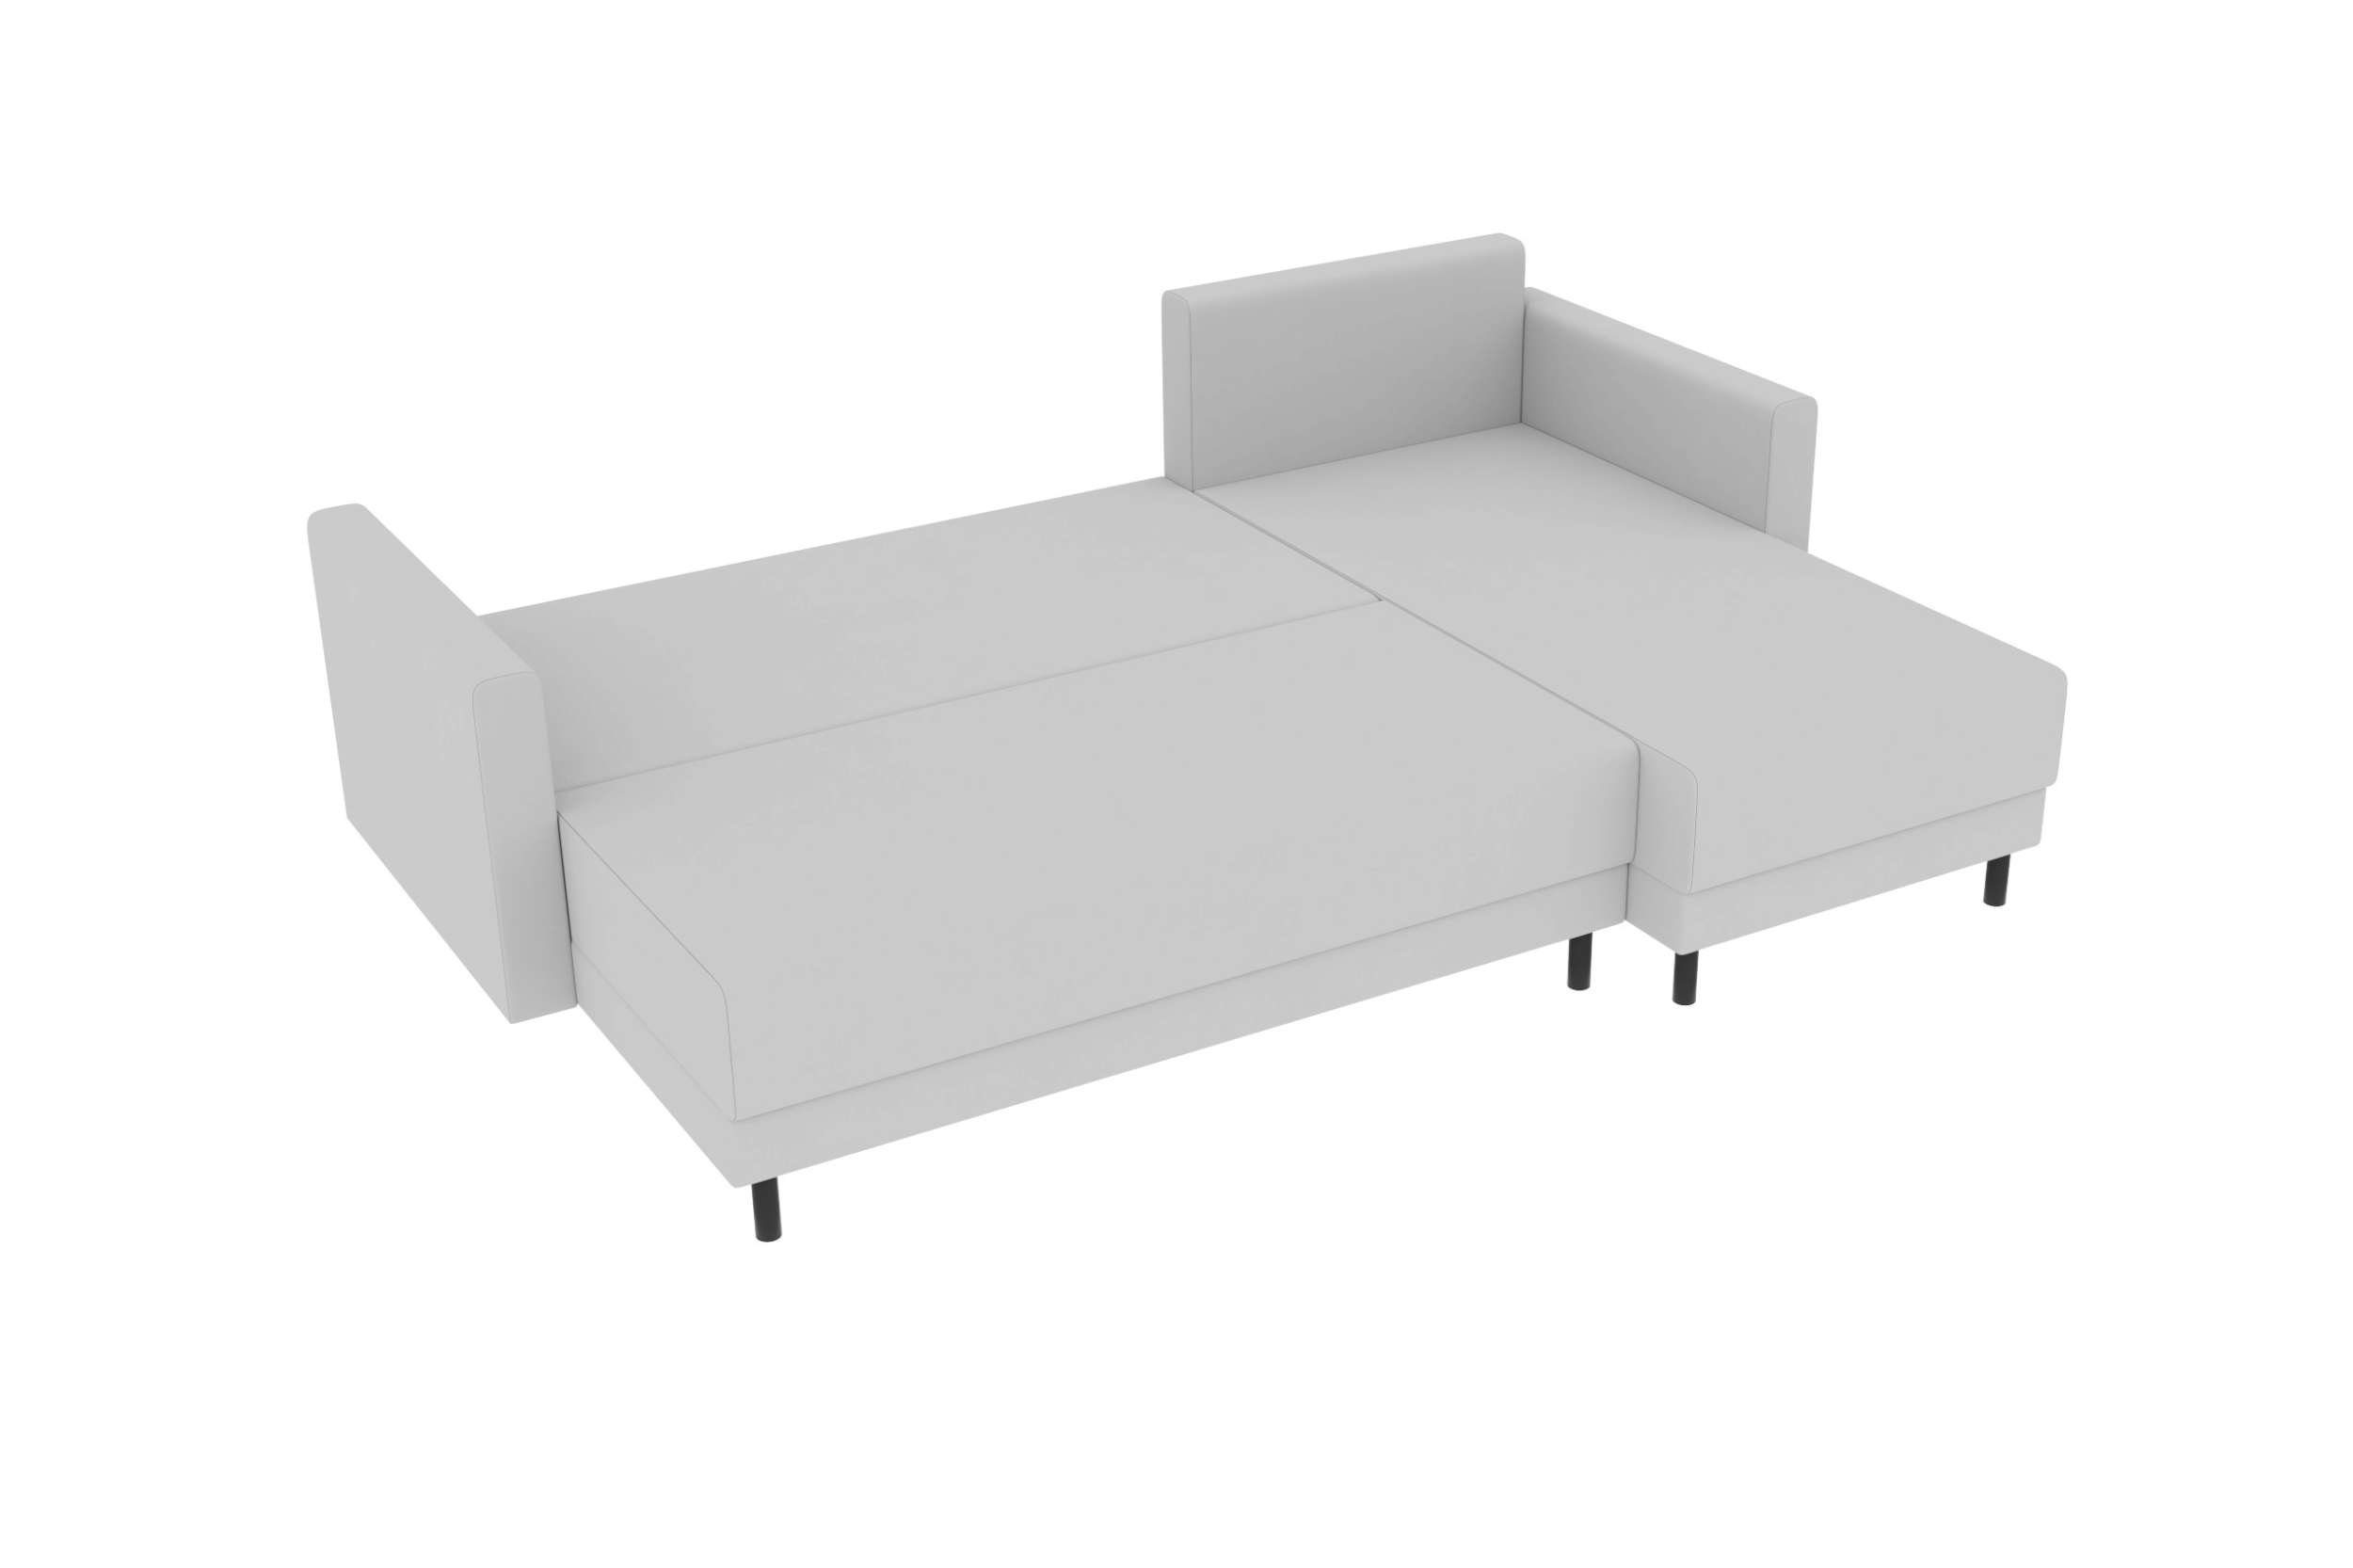 Modern Bettfunktion, mit Ecksofa Stylefy Bettkasten, Paloma, mit Sofa, Eckcouch, L-Form, Design Sitzkomfort,